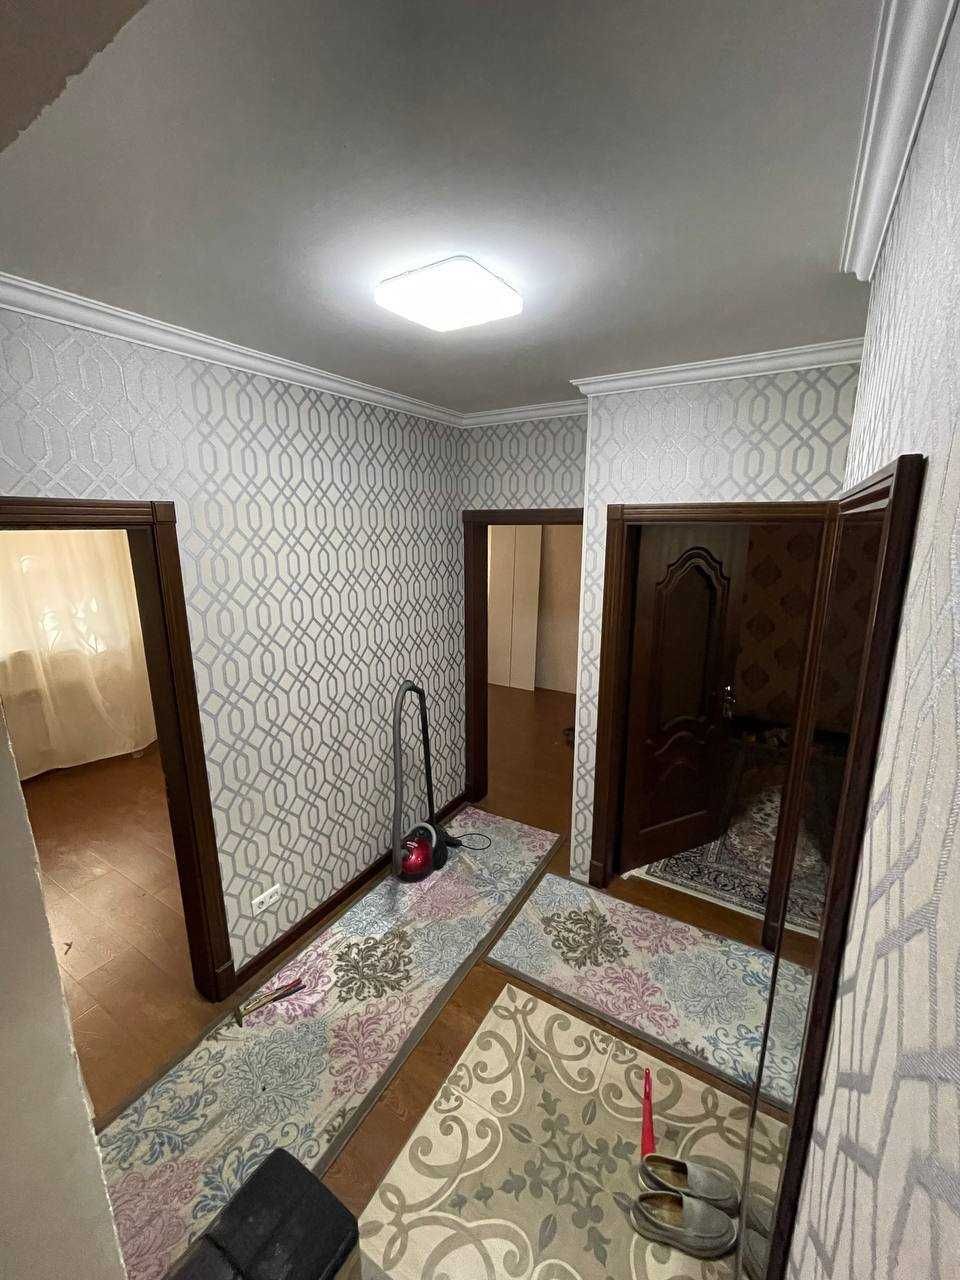 Продаётся квартира под офис на М.ГОРЬКОГО. Ориентир гостиница «Саёхат»